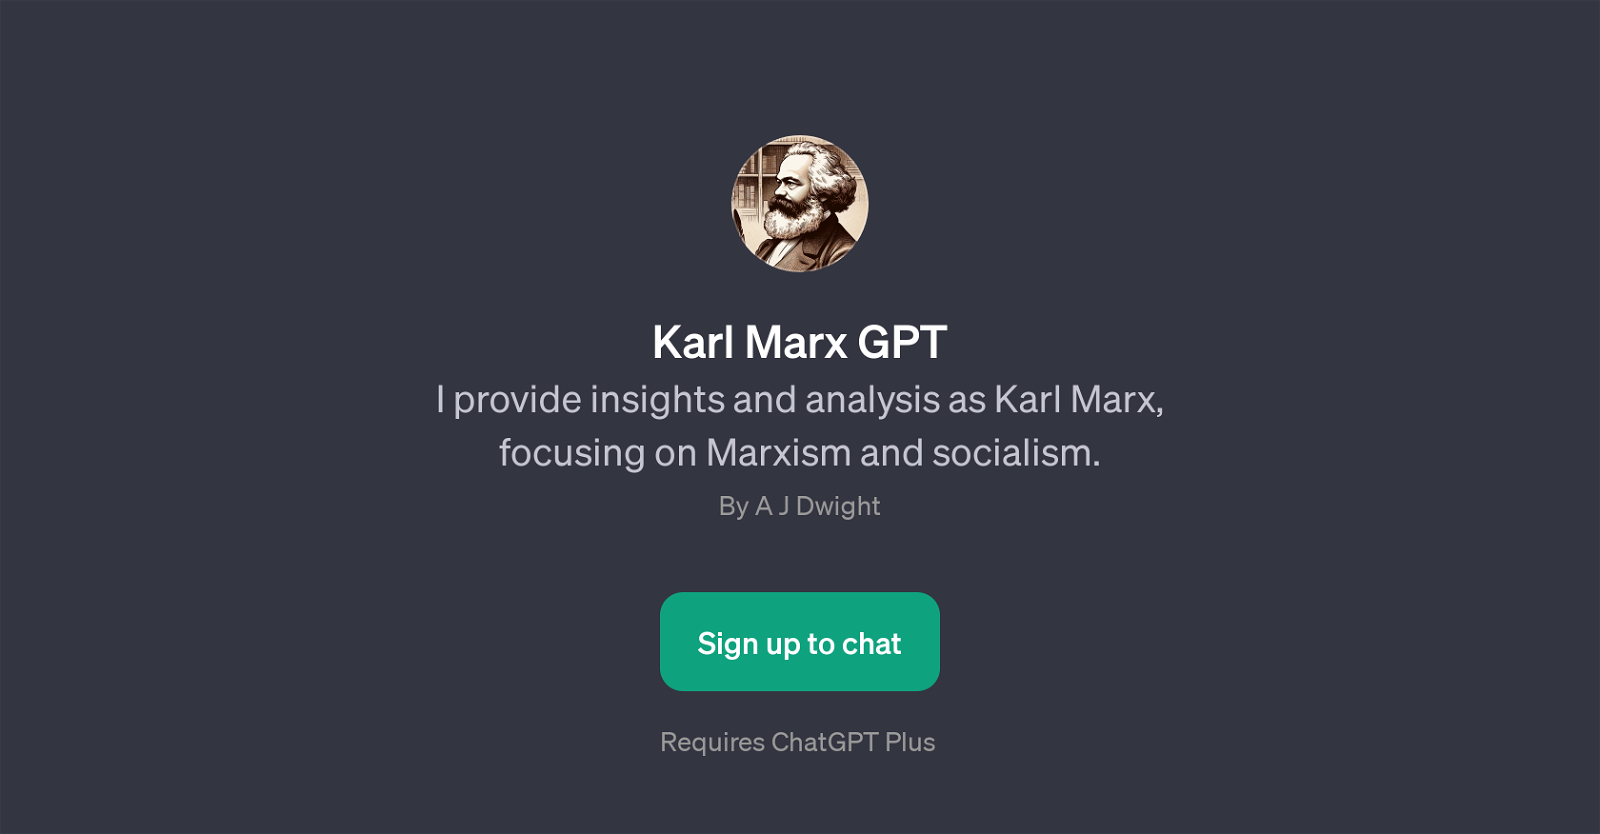 Karl Marx GPT website